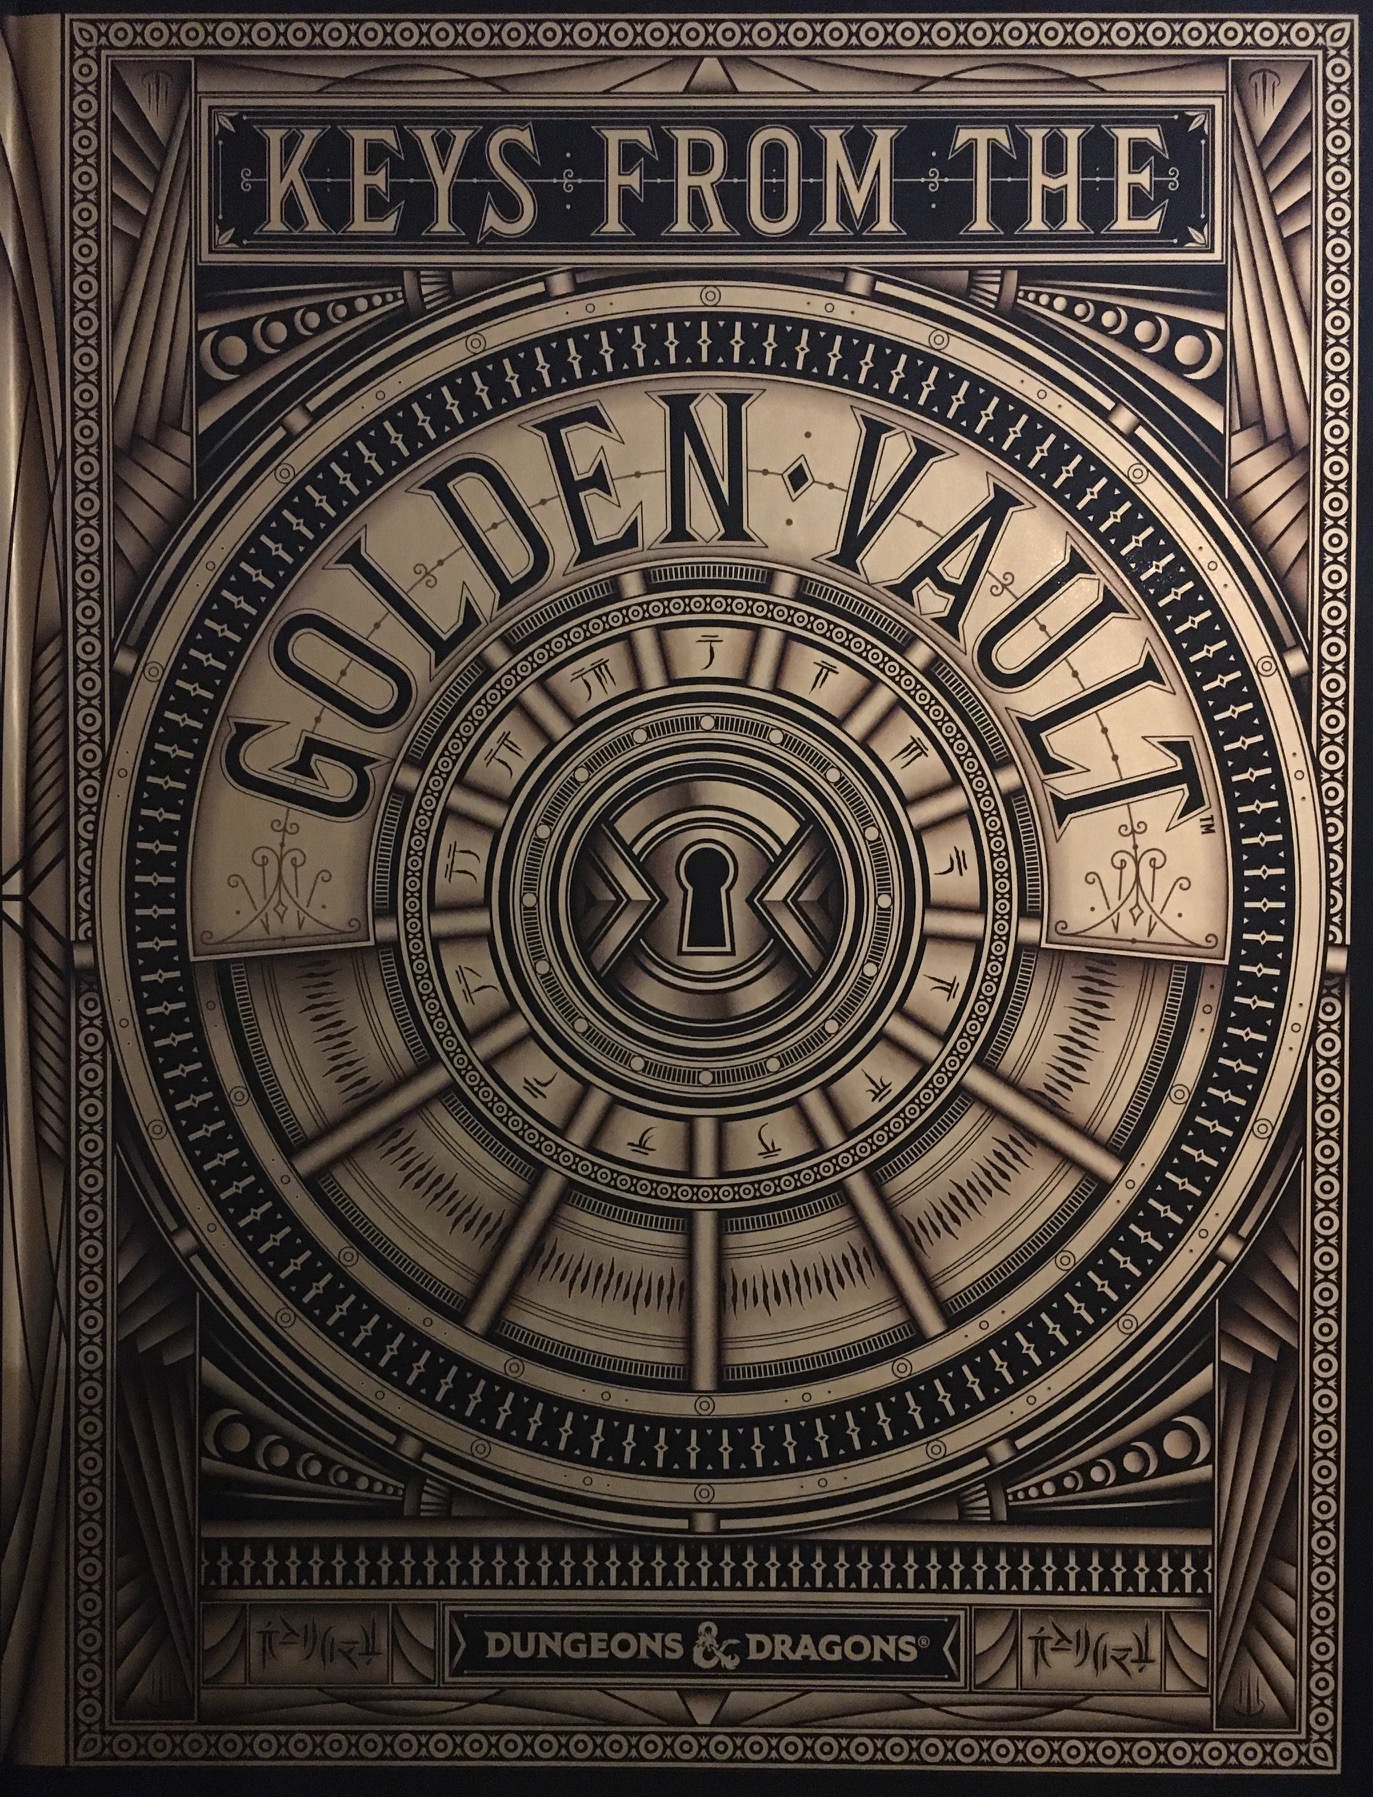 Golden Time Review – The Vault Publication